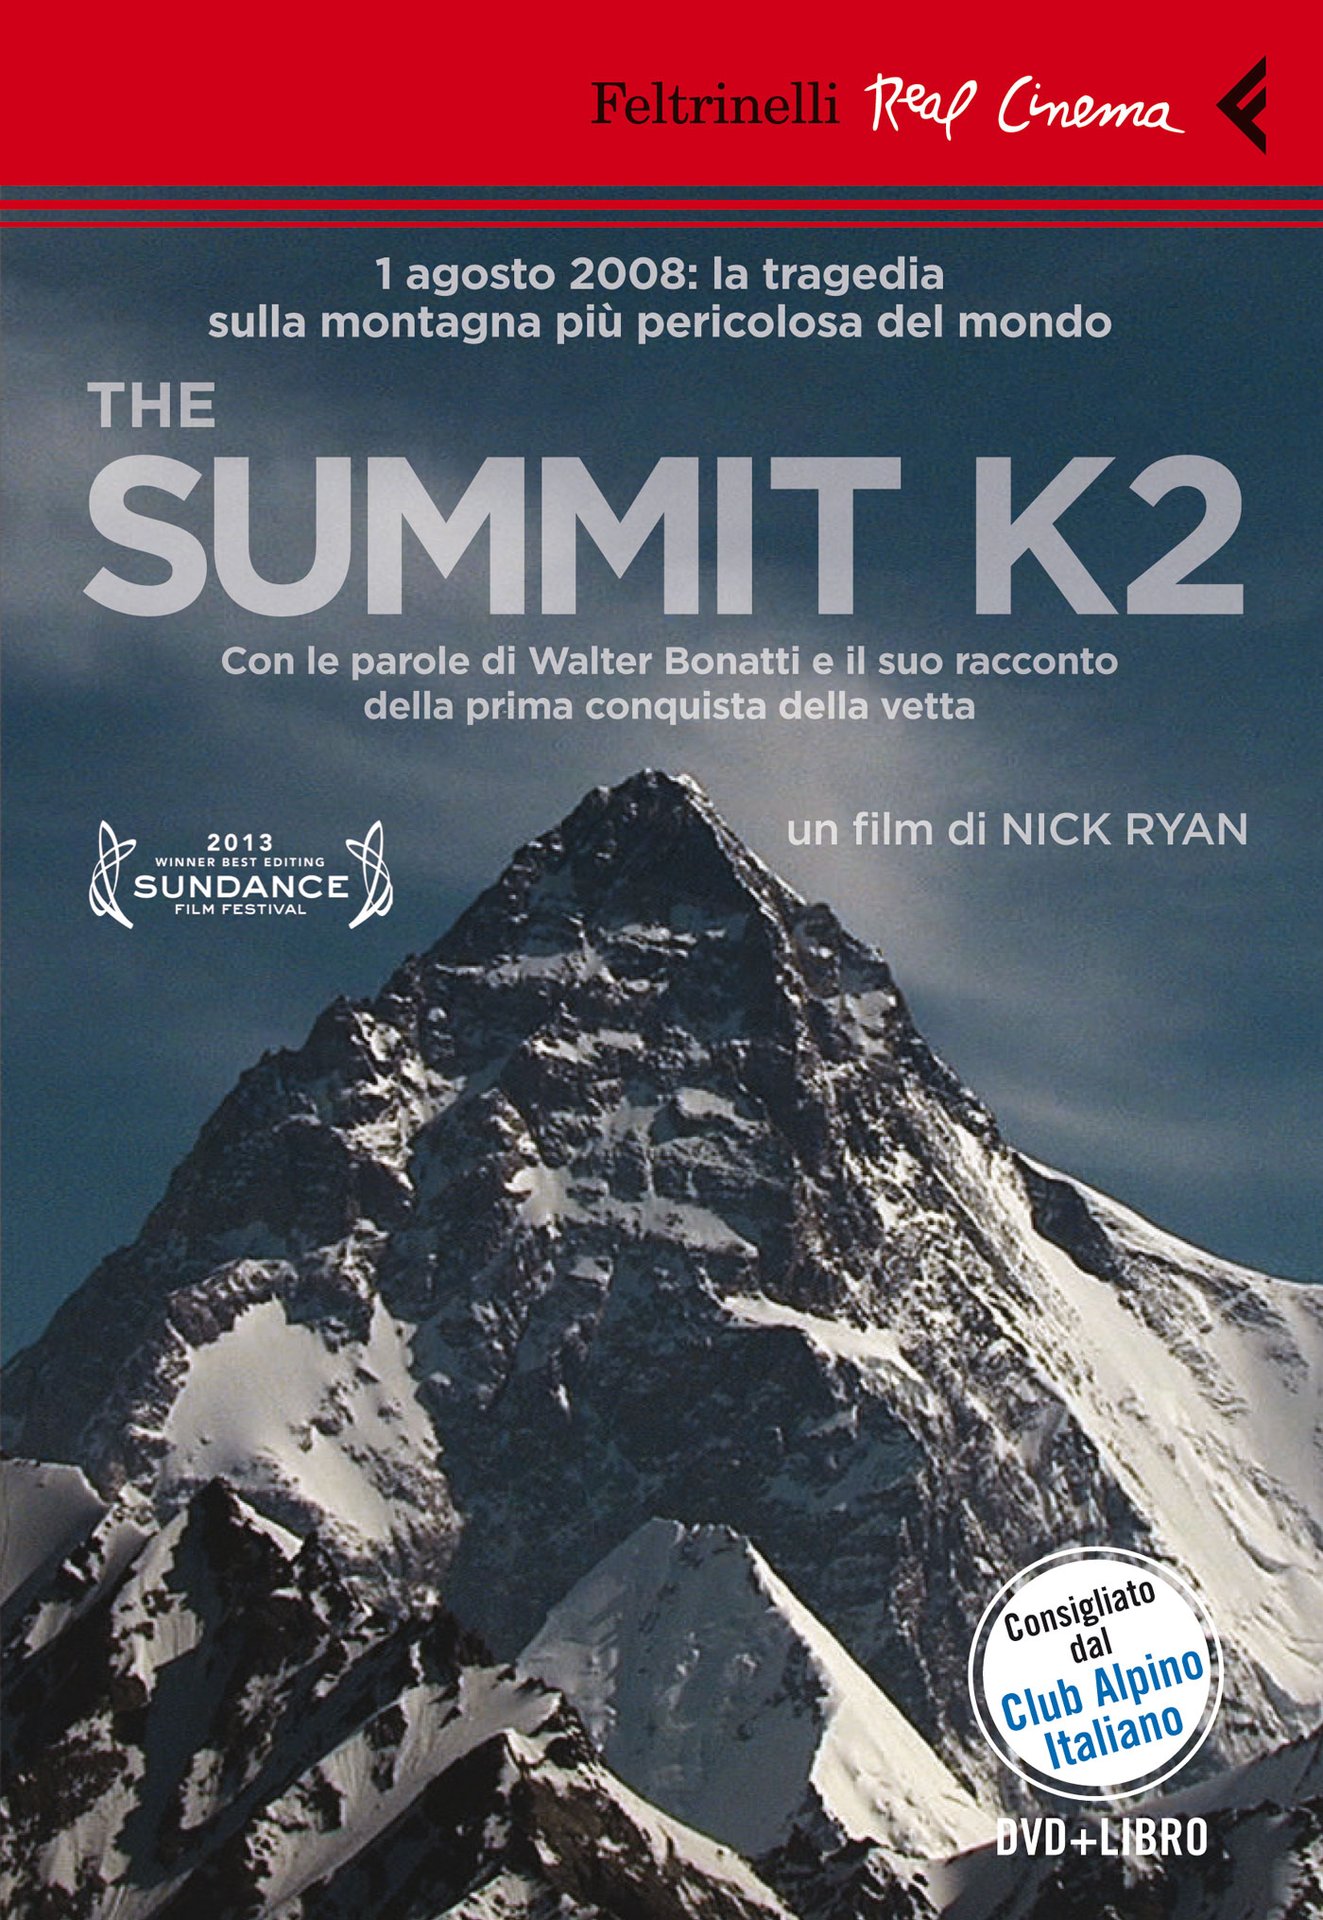 The summit K2